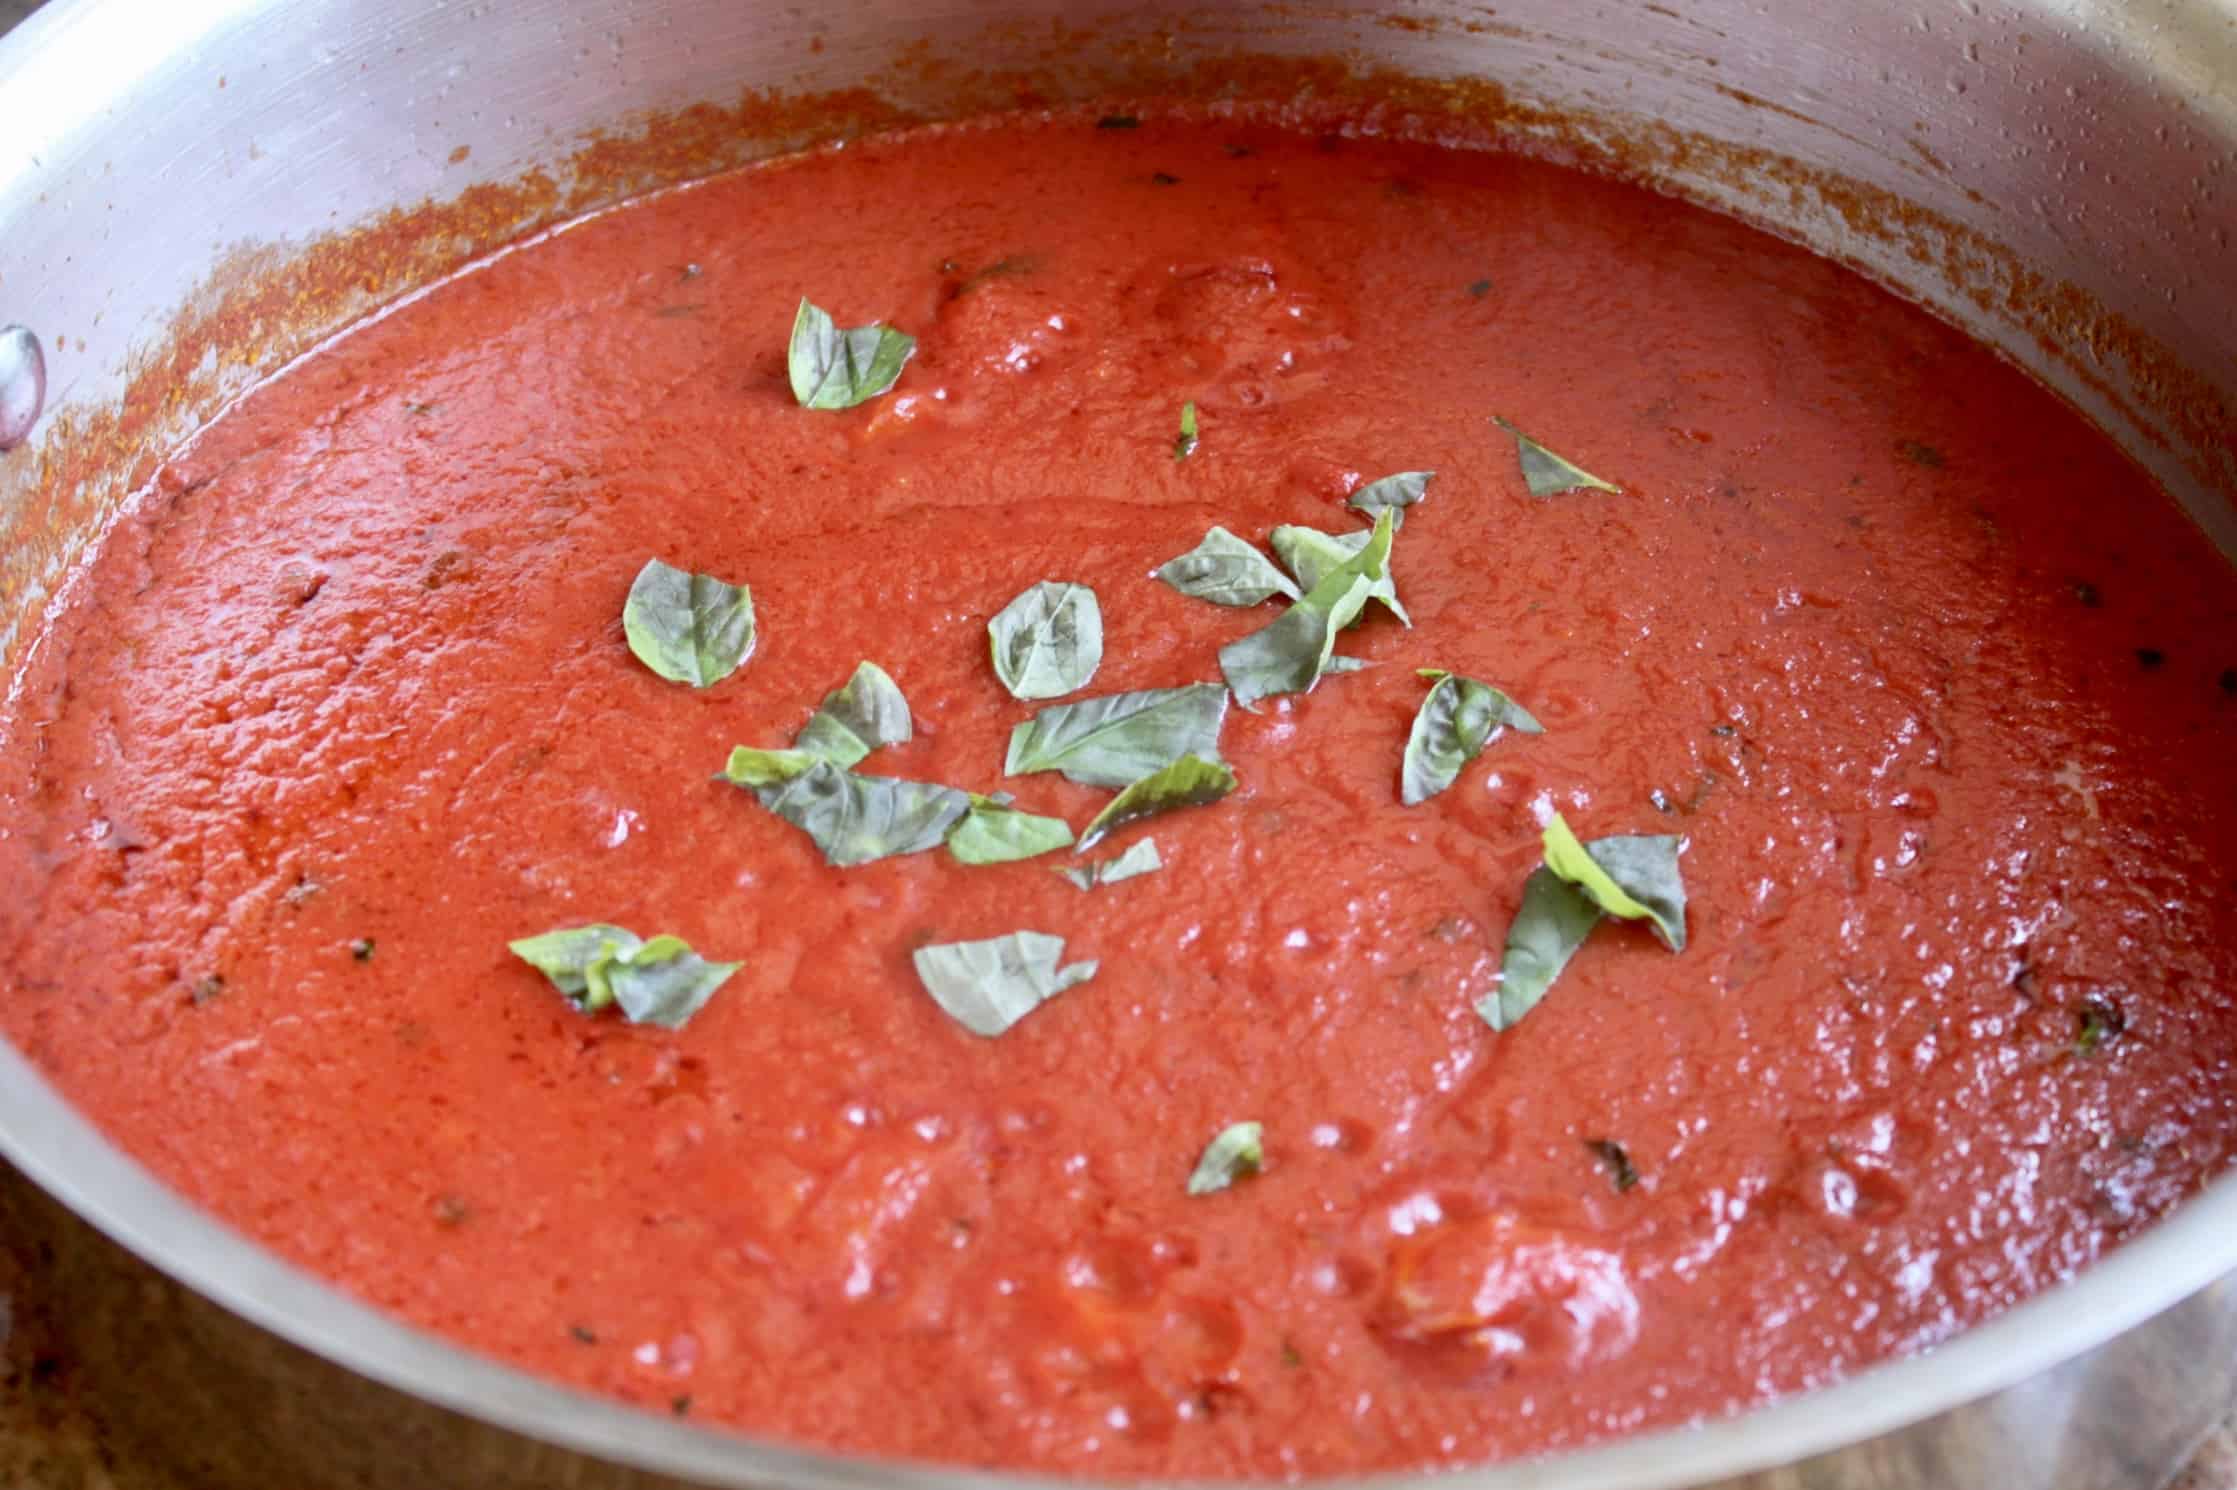 arrabbiata sauce with basil added